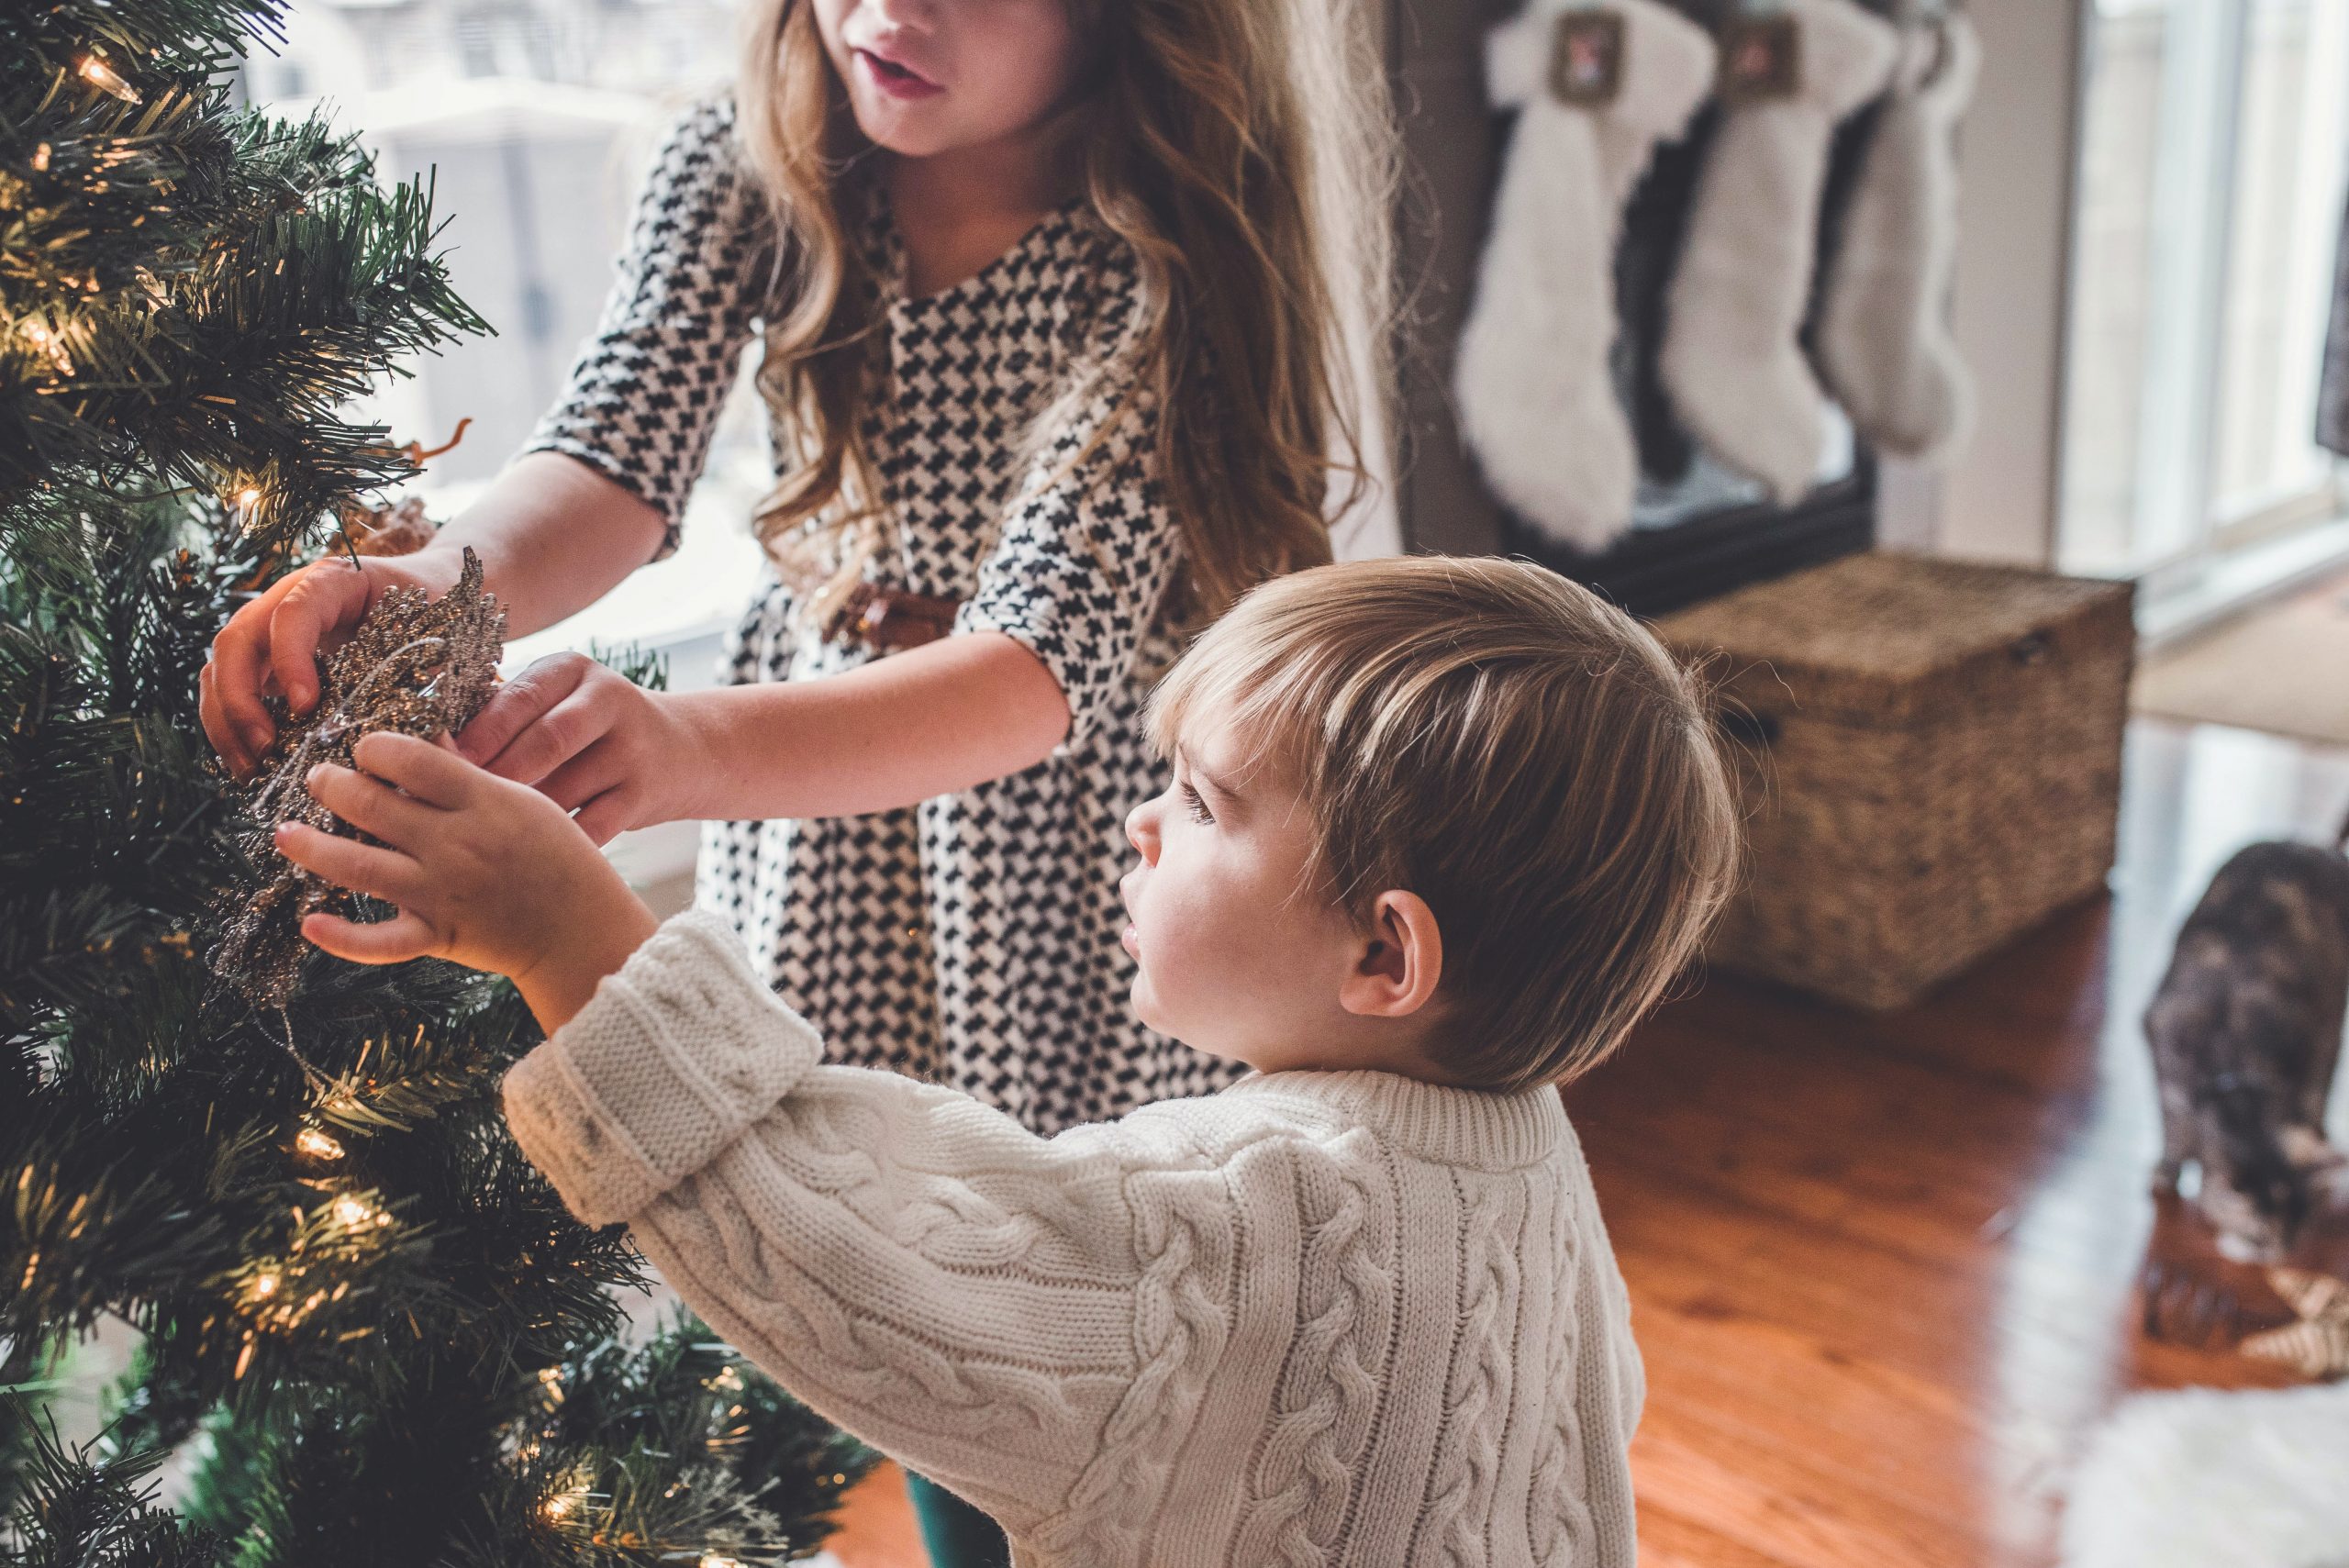 Fijne feestdagen, ook voor ouders en kinderen uit gescheiden gezinnen